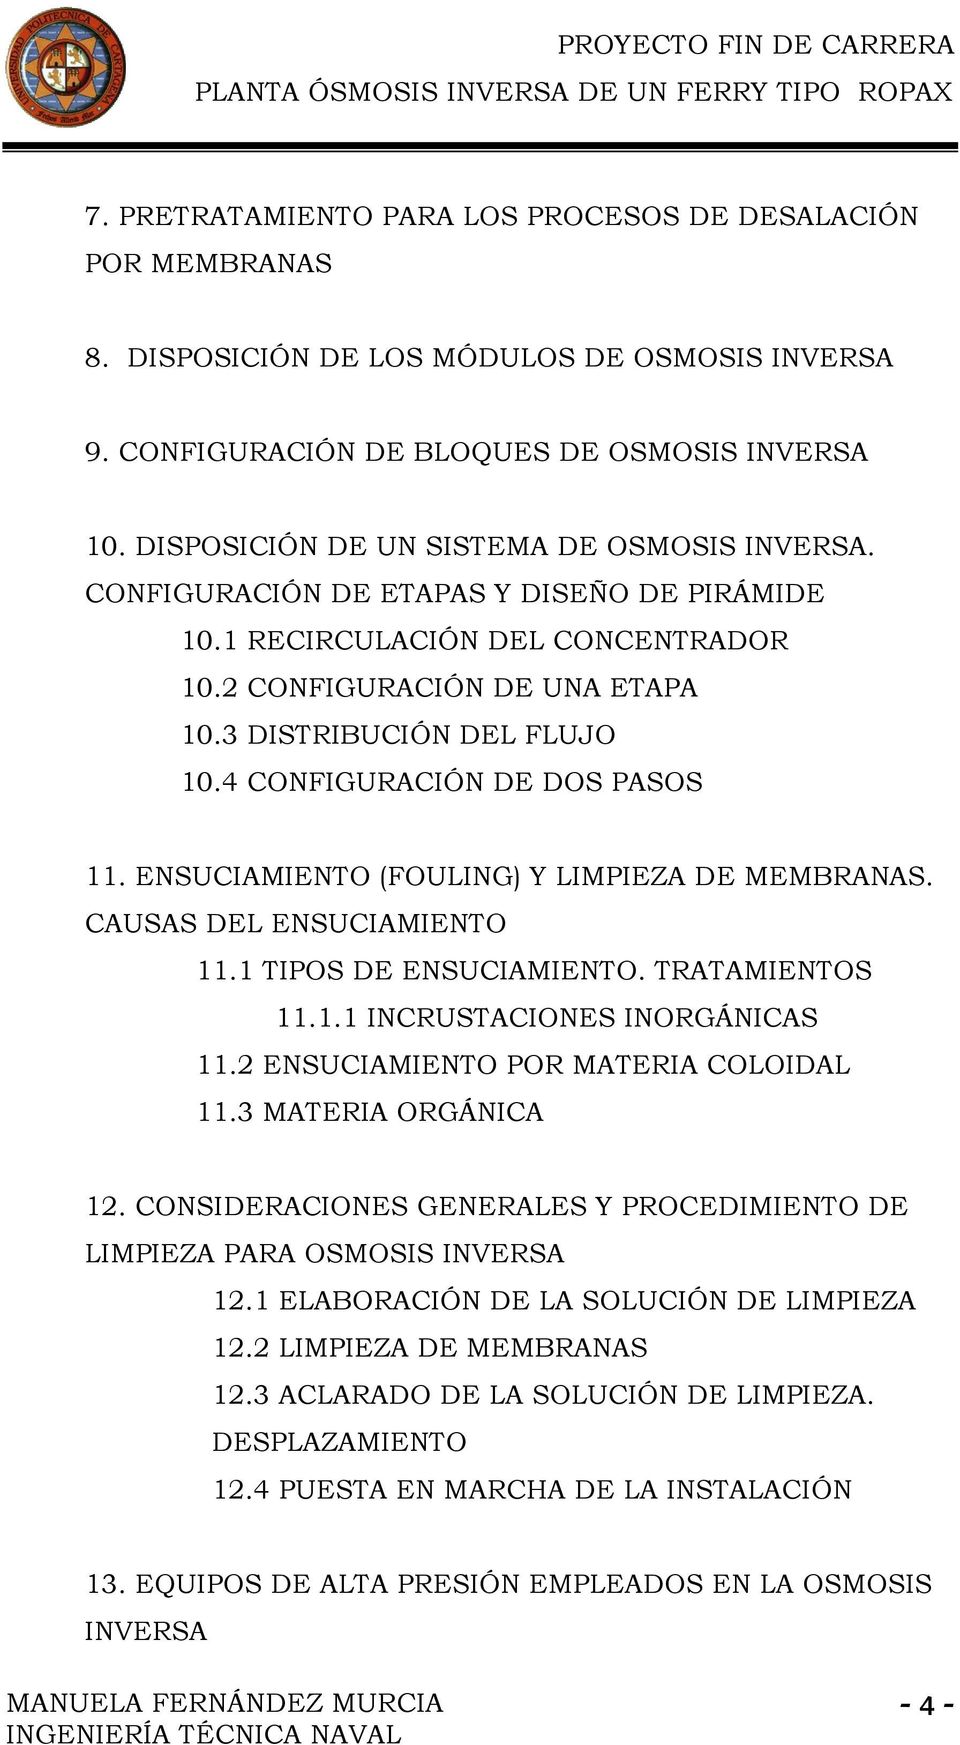 4 CONFIGURACIÓN DE DOS PASOS 11. ENSUCIAMIENTO (FOULING) Y LIMPIEZA DE MEMBRANAS. CAUSAS DEL ENSUCIAMIENTO 11.1 TIPOS DE ENSUCIAMIENTO. TRATAMIENTOS 11.1.1 INCRUSTACIONES INORGÁNICAS 11.